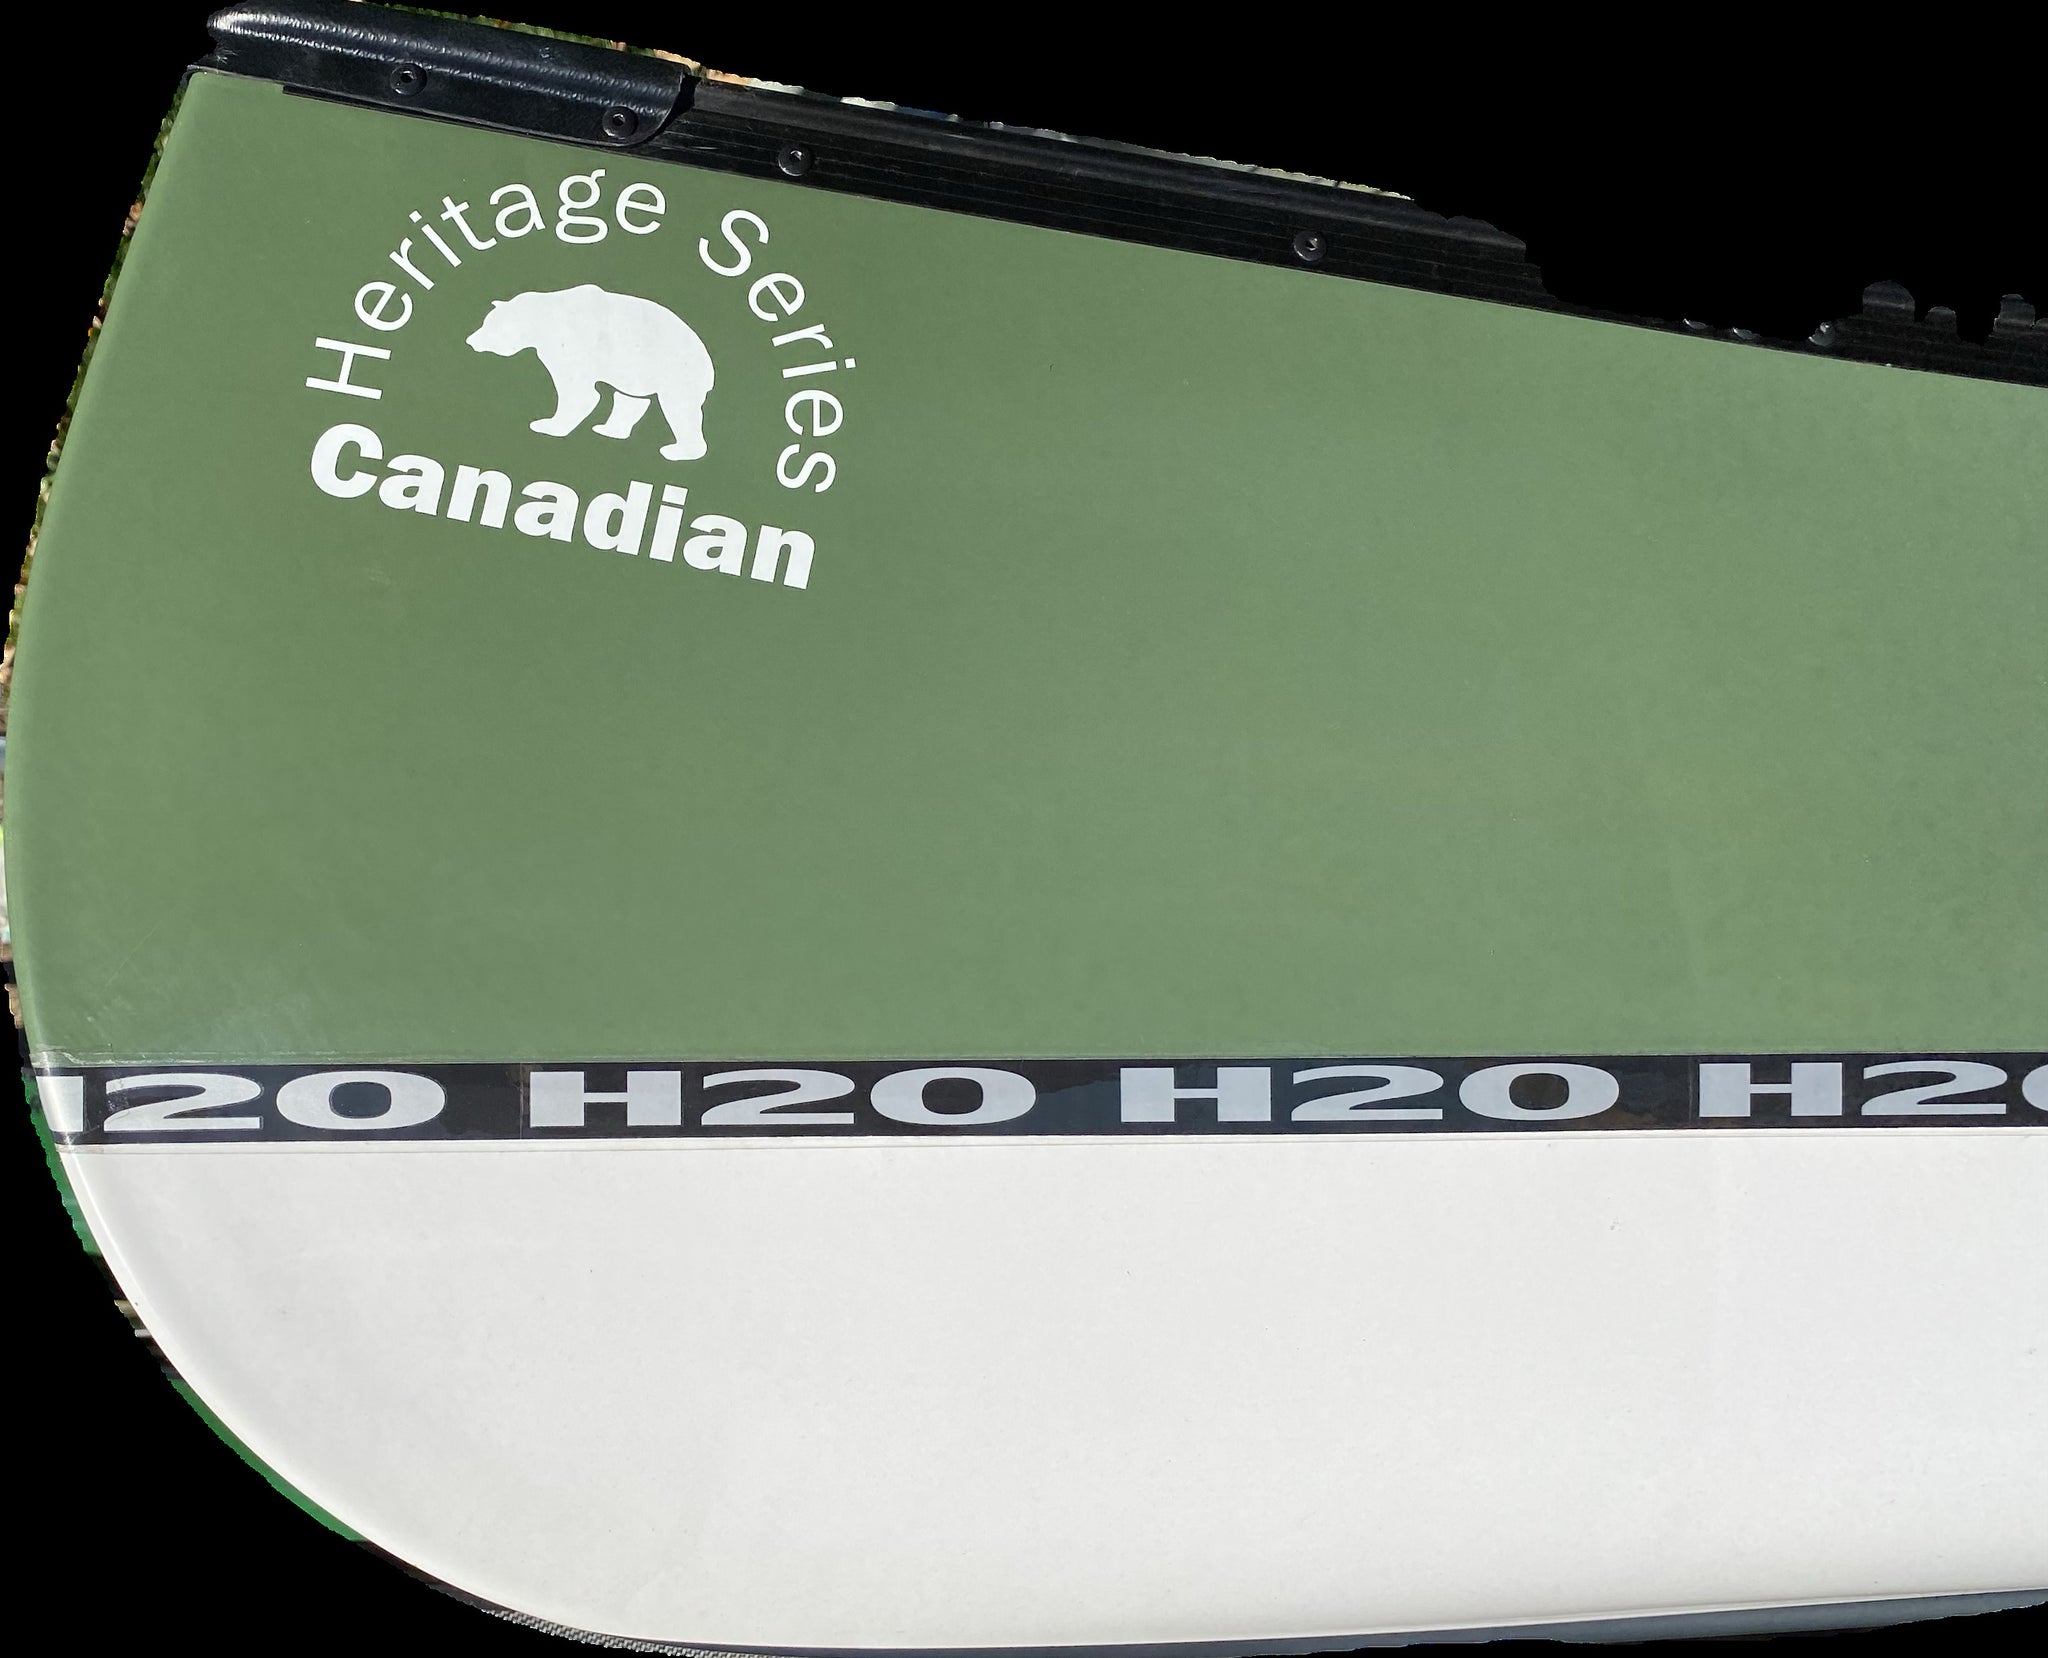 H2O - Canadian 16'6" - GWN Innegra/Basalt